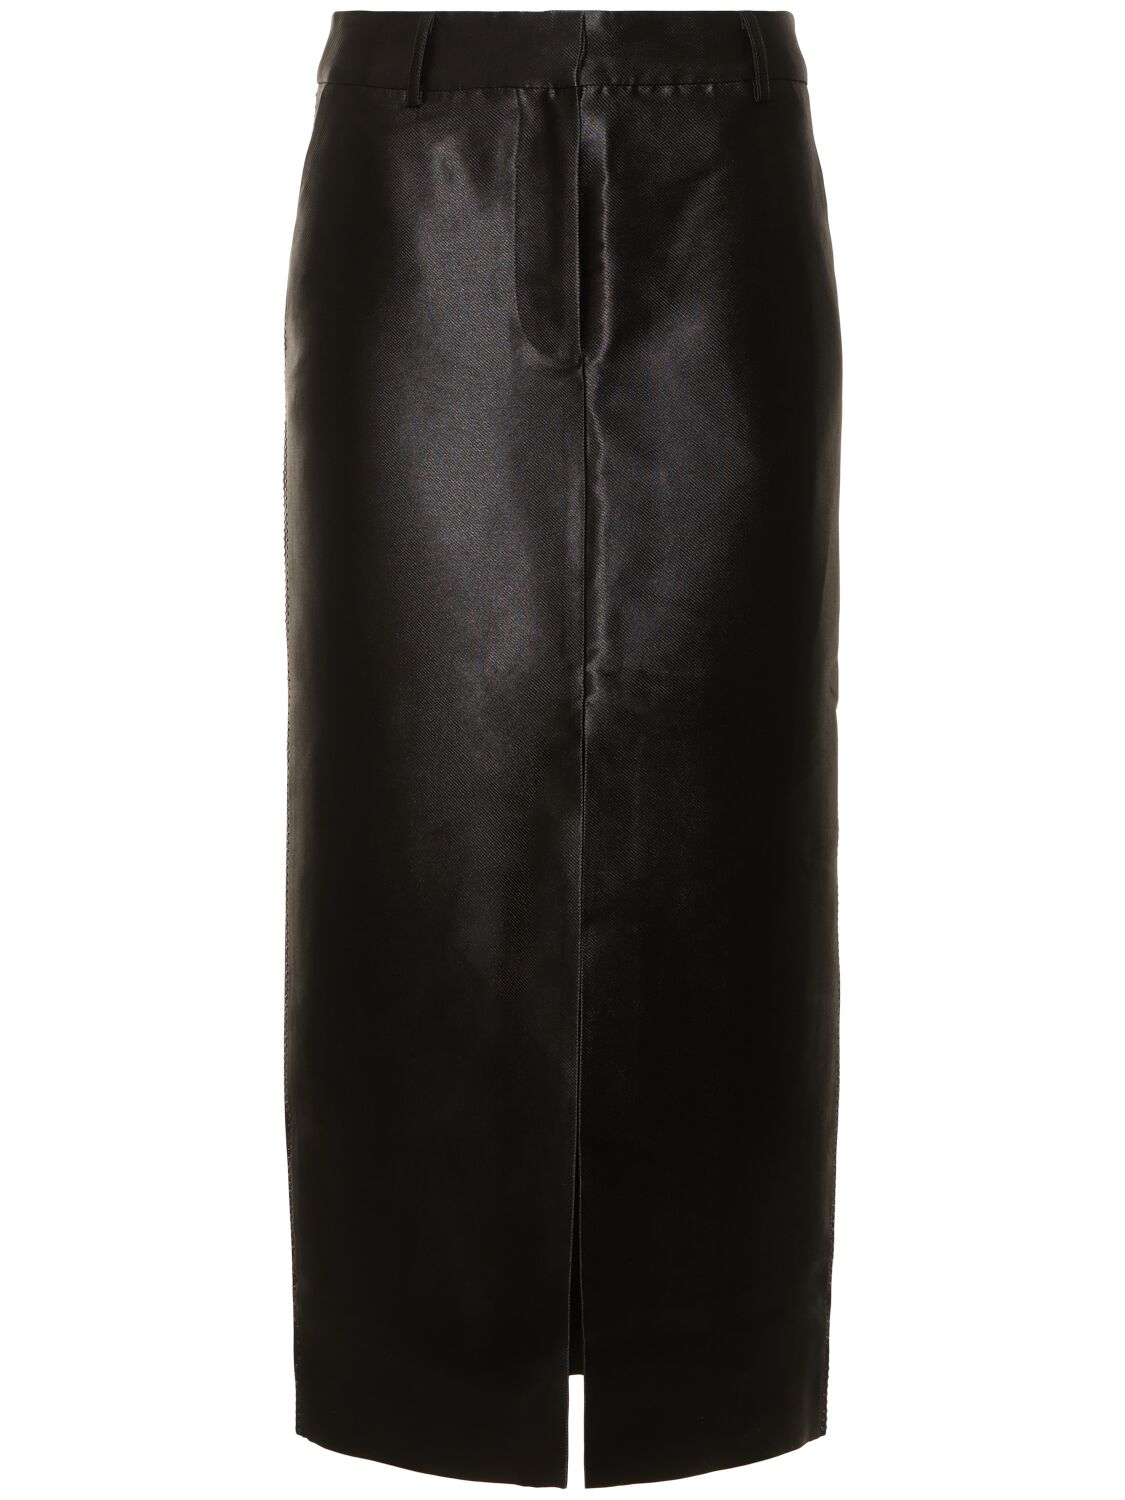 Rotate Birger Christensen 装饰粘胶纤维混纺超长半身裙 In Black